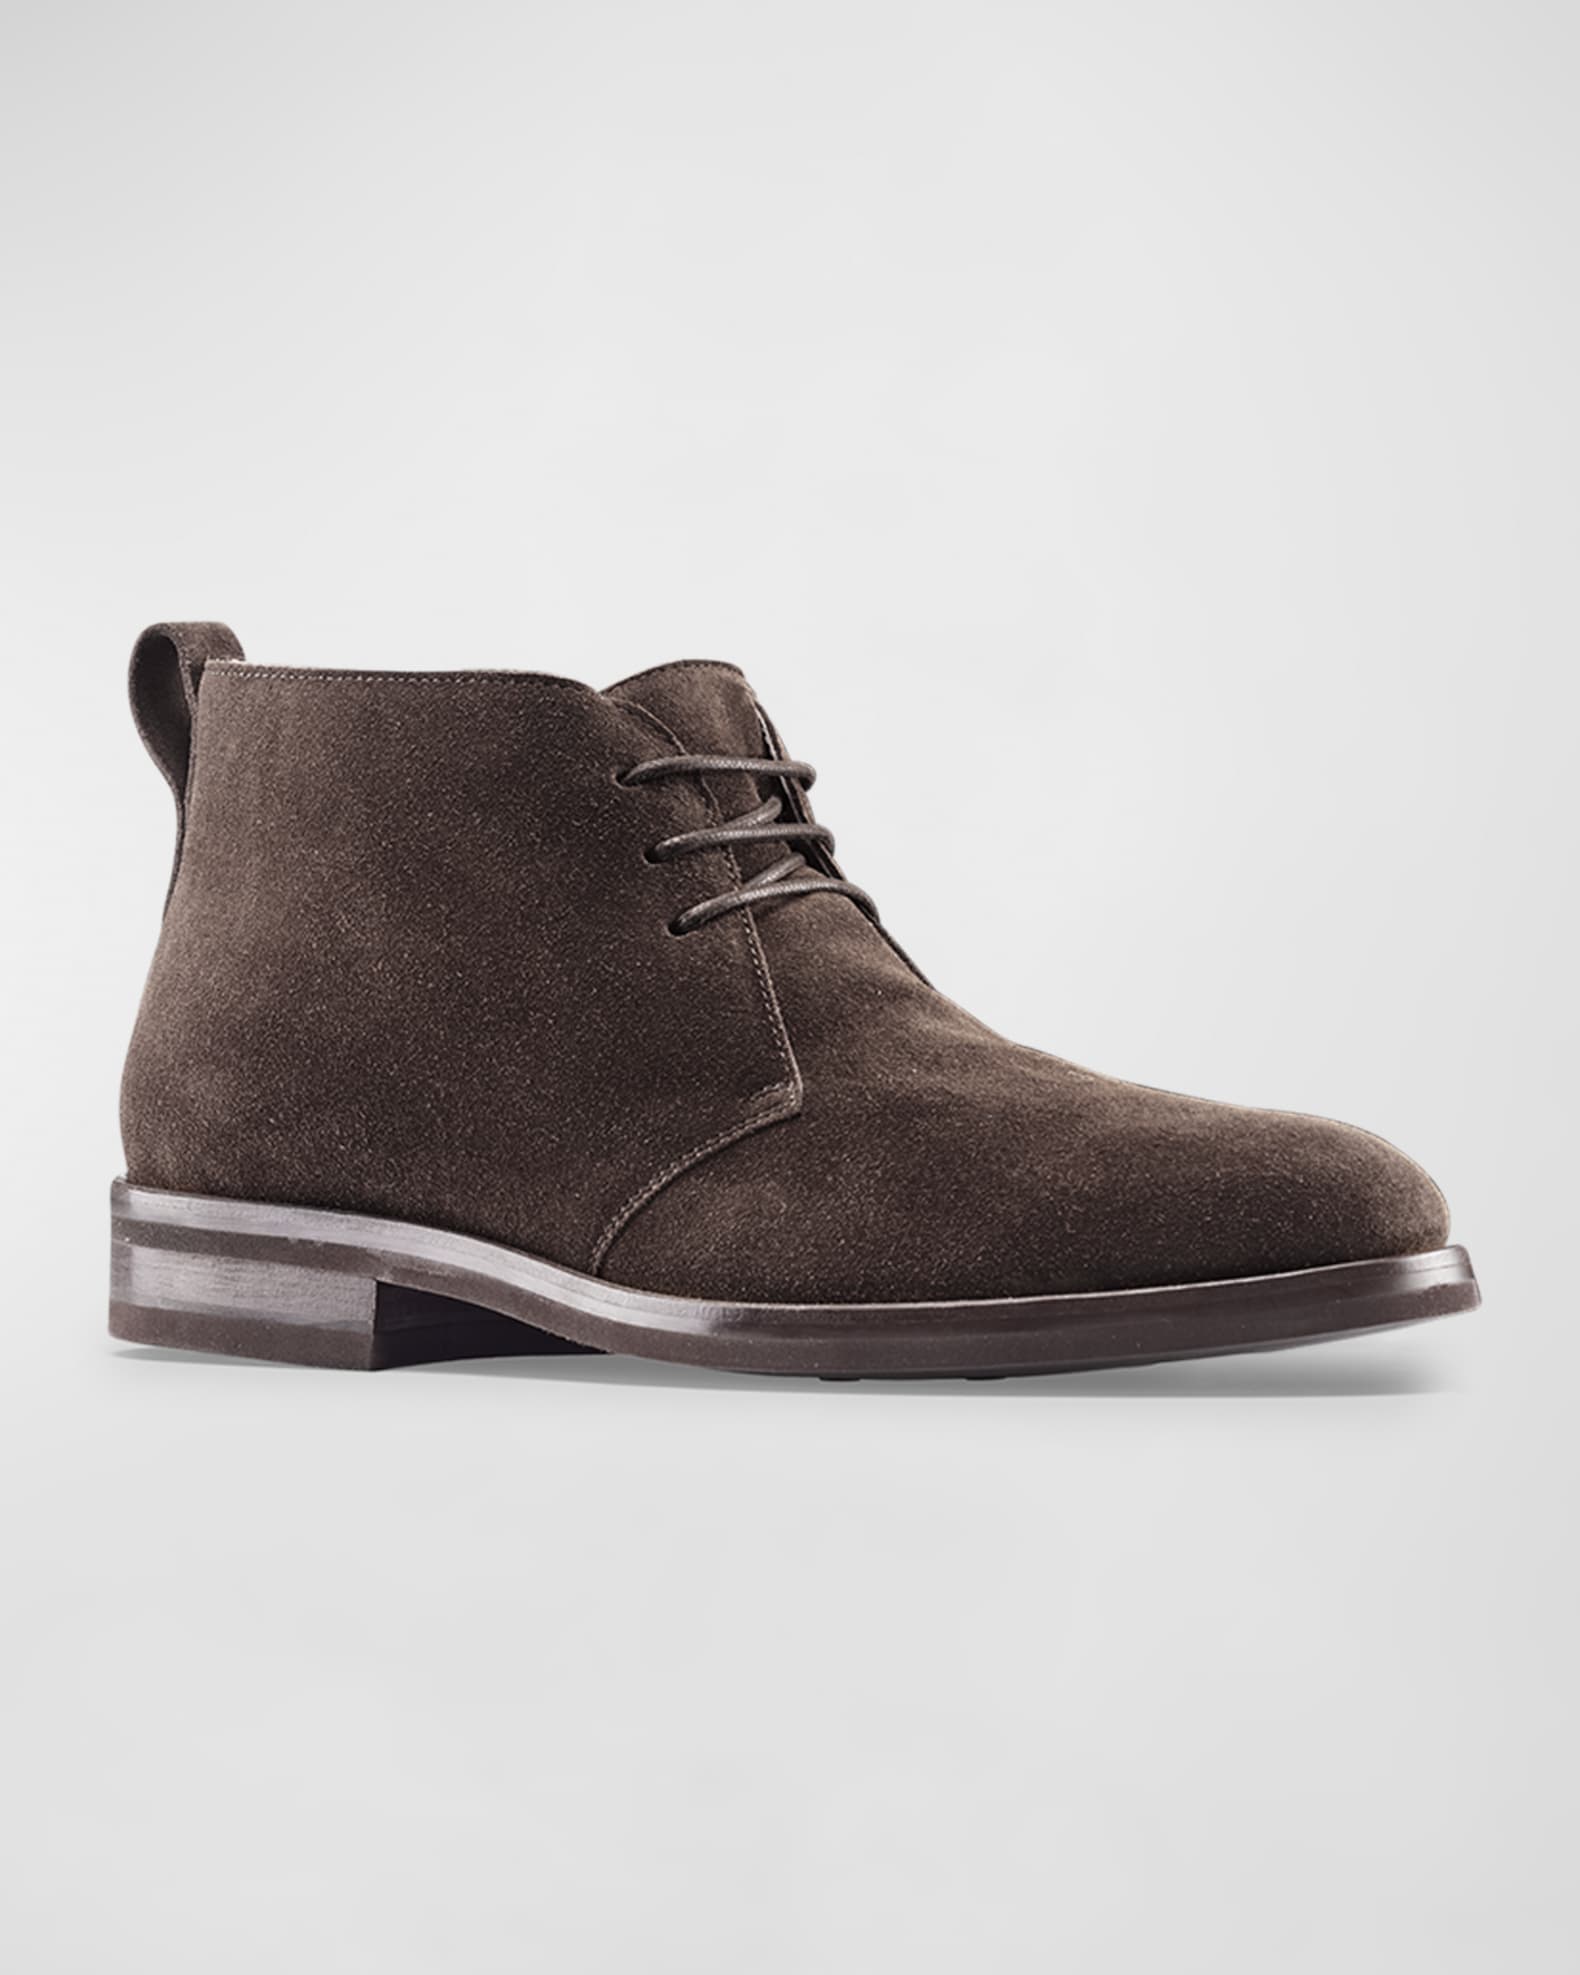 Koio Men's Lucca Suede Chukka Boots | Neiman Marcus